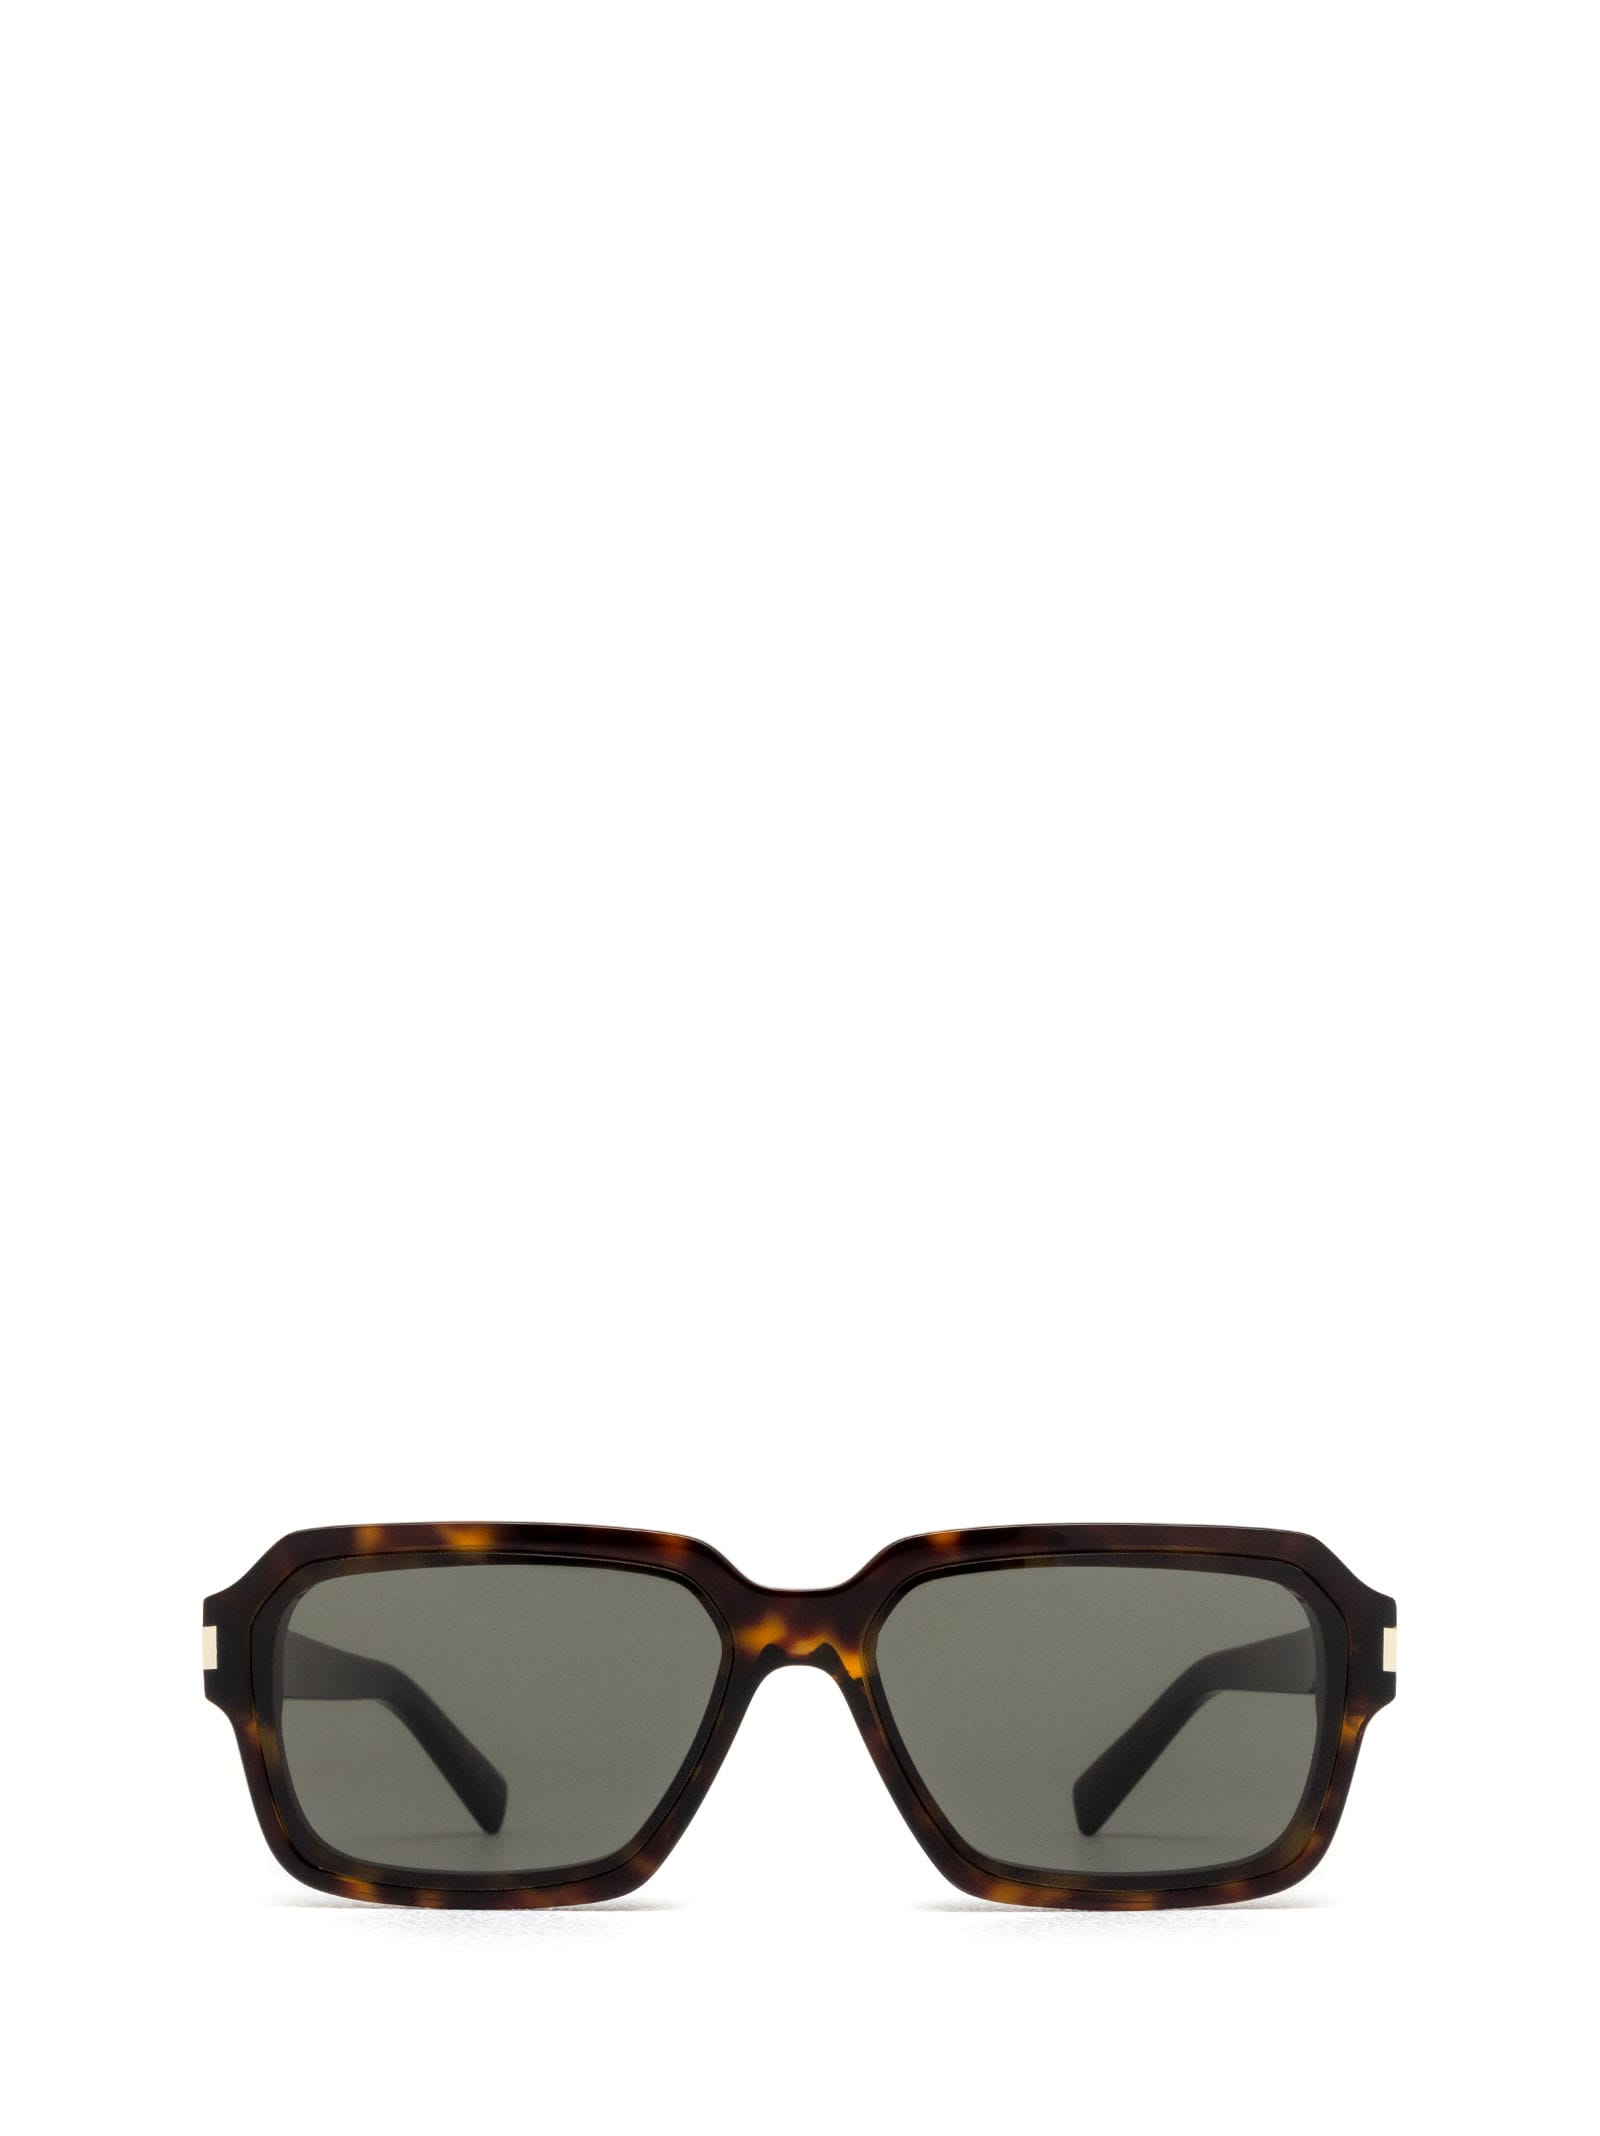 Saint Laurent Sl 611 Havana Sunglasses In 002 Havana Havana Grey | ModeSens